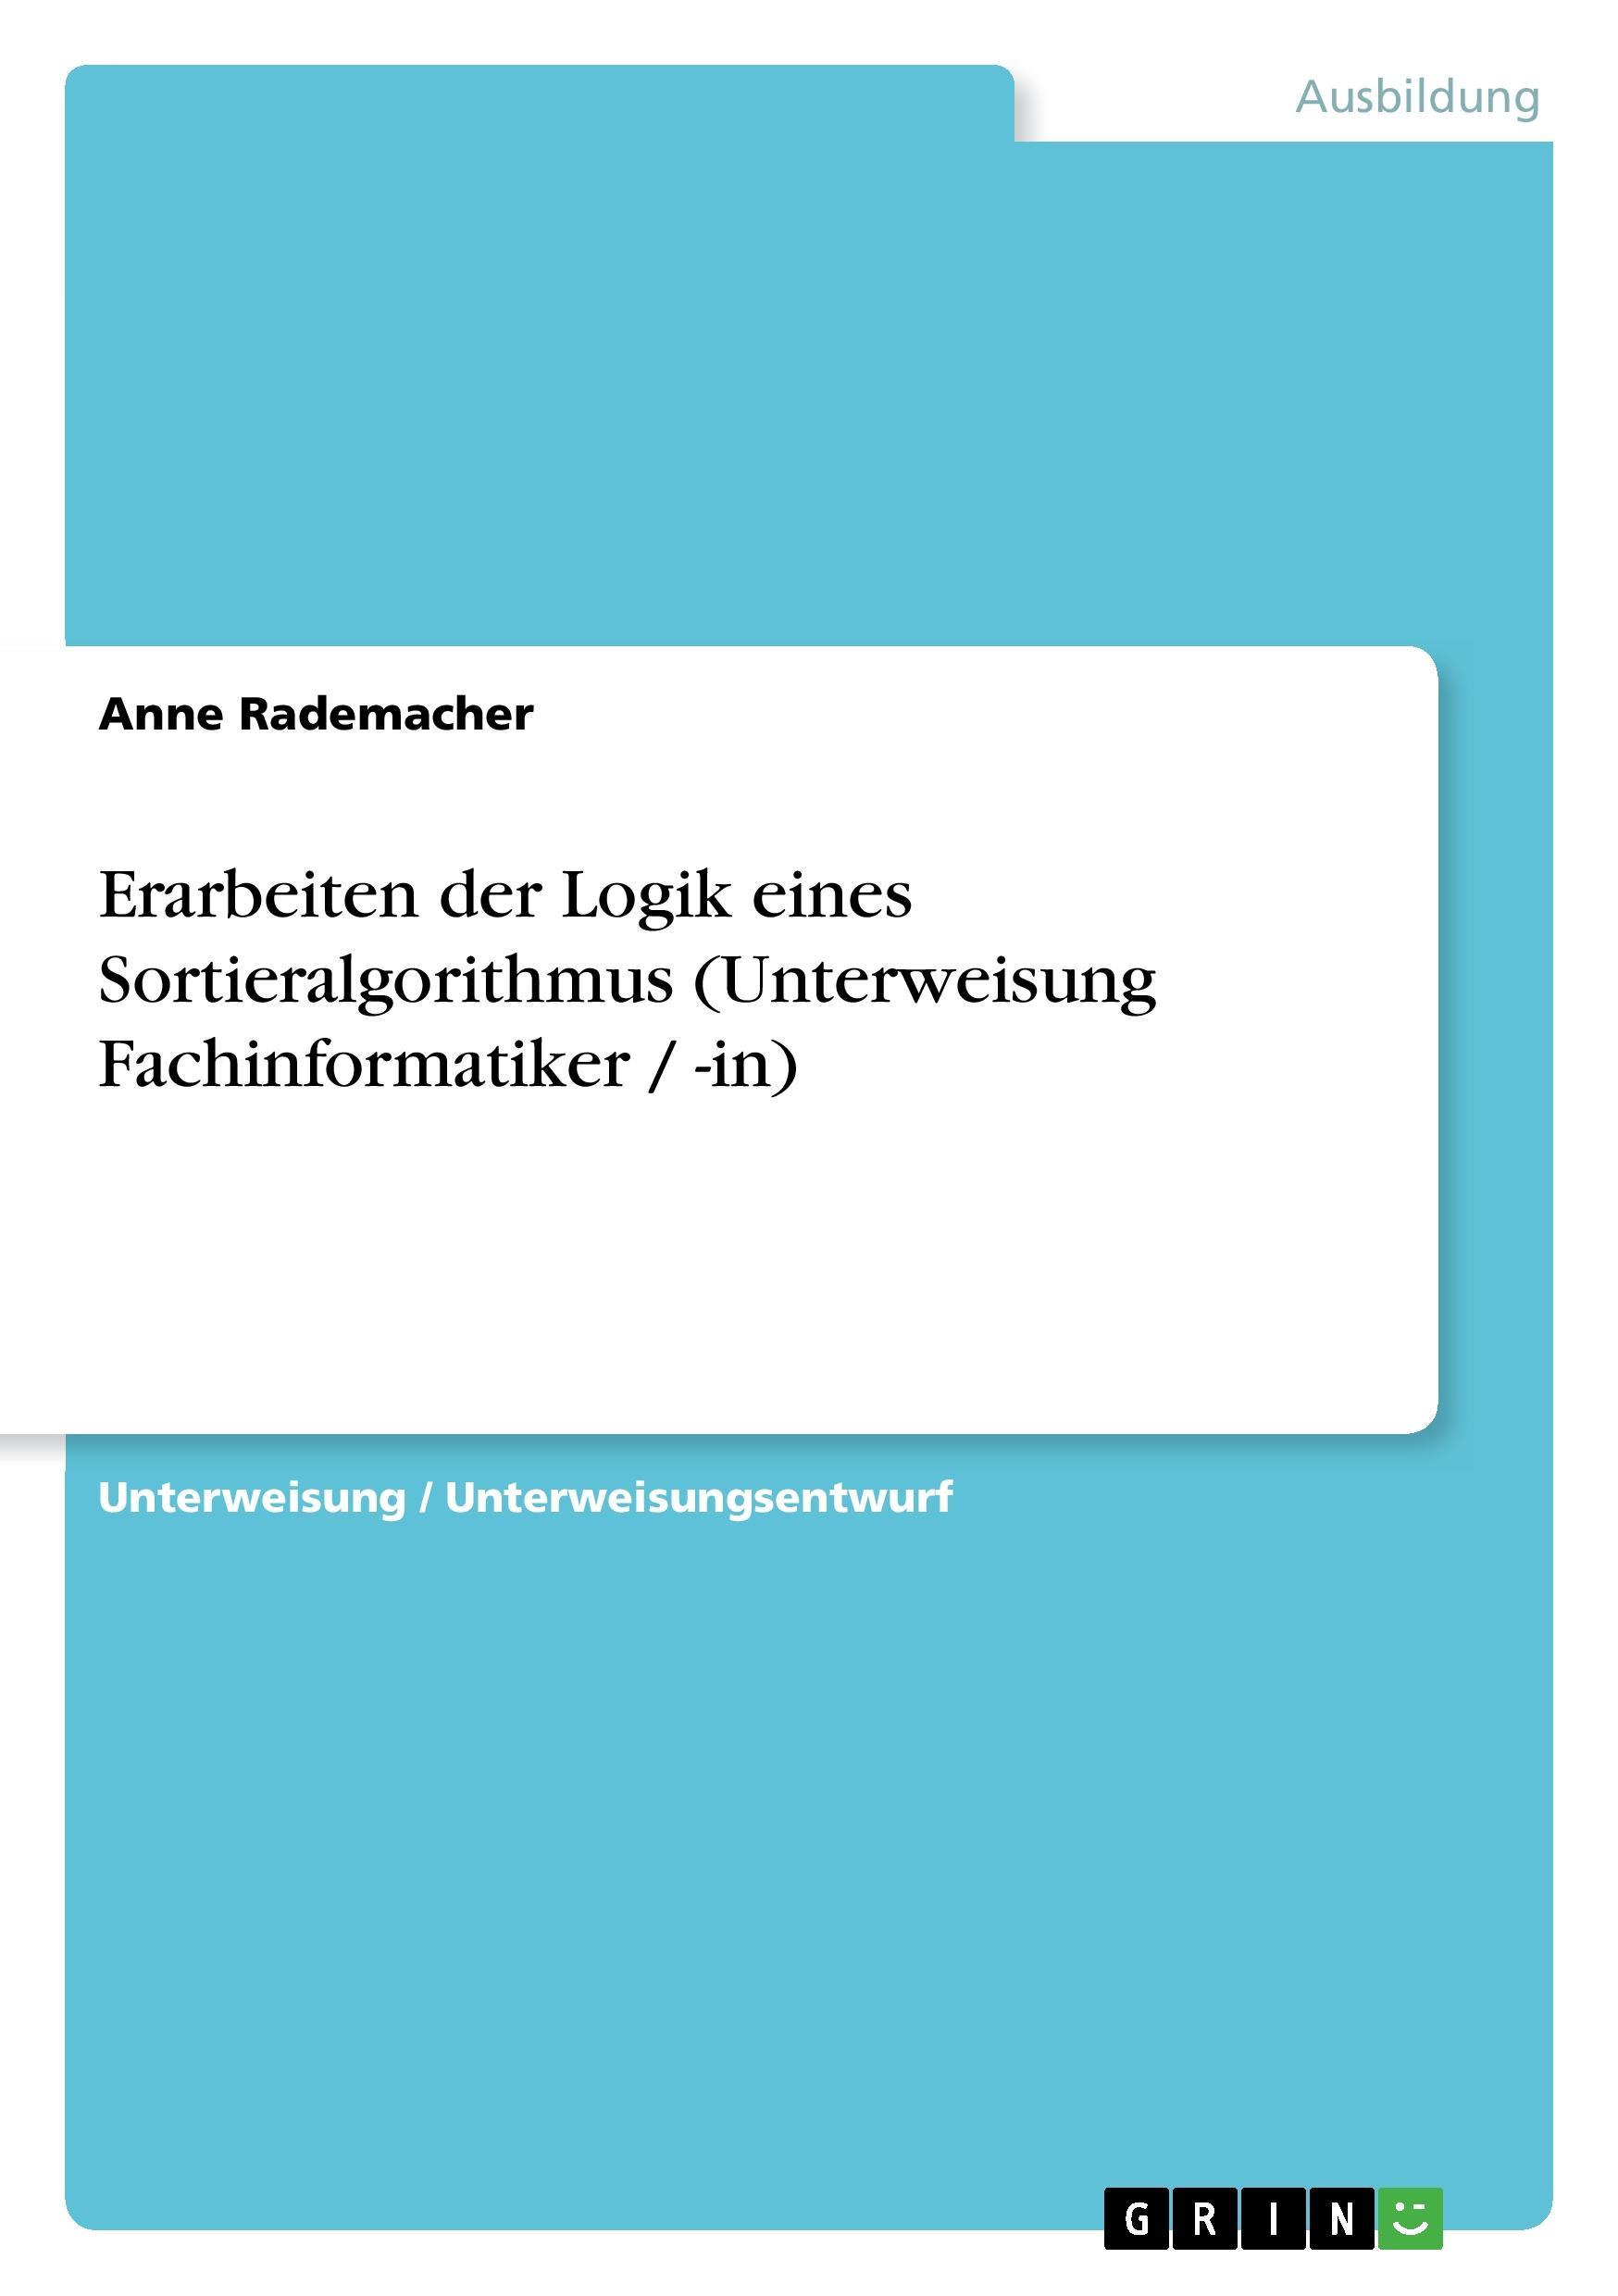 Erarbeiten der Logik eines Sortieralgorithmus (Unterweisung Fachinformatiker / -in) - Rademacher, Anne